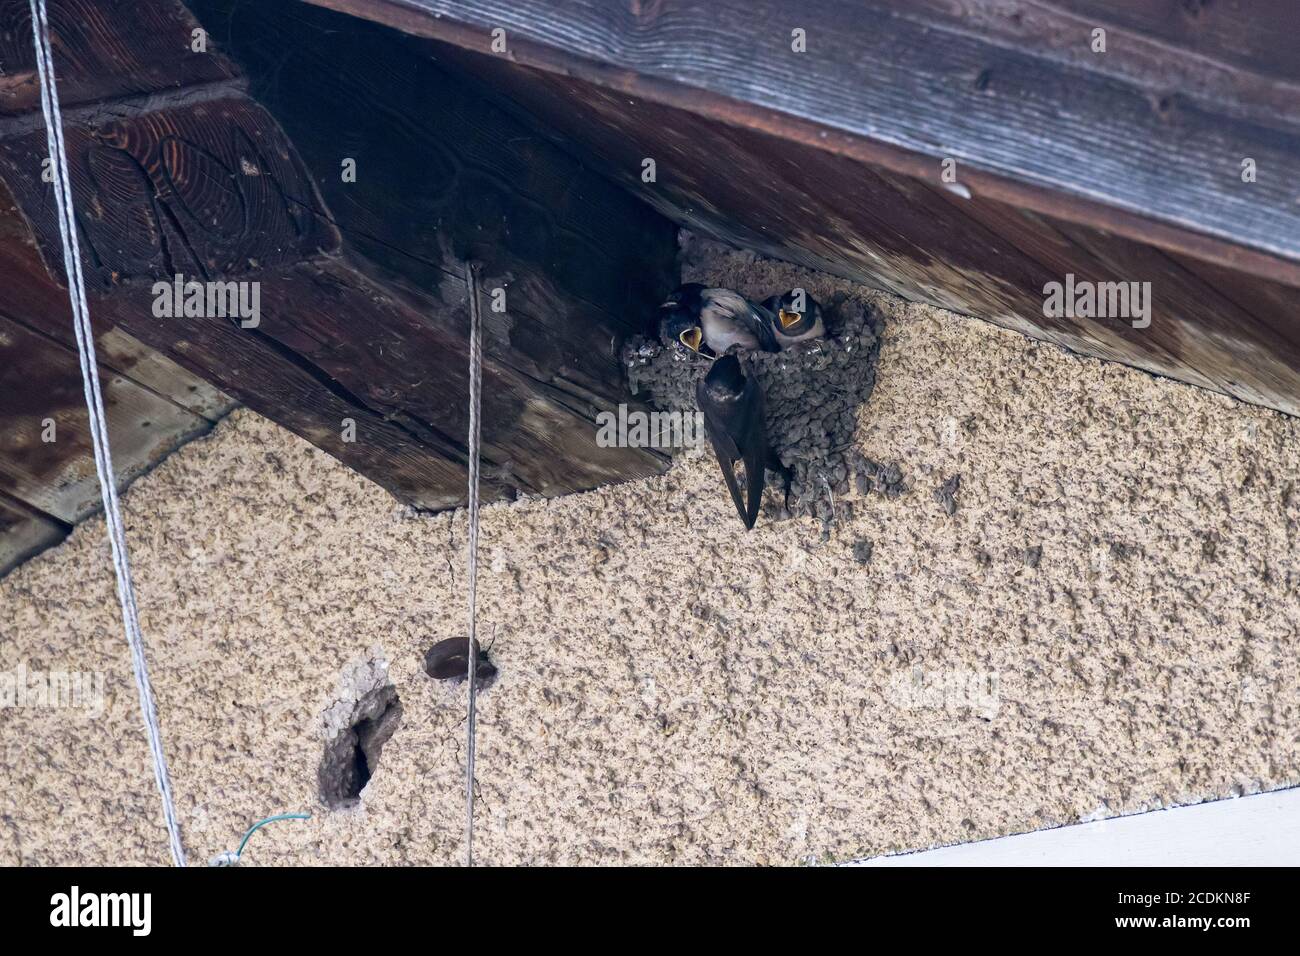 La barde européenne (Hirundo rustica) nourrissant des bébés dans le nid Banque D'Images